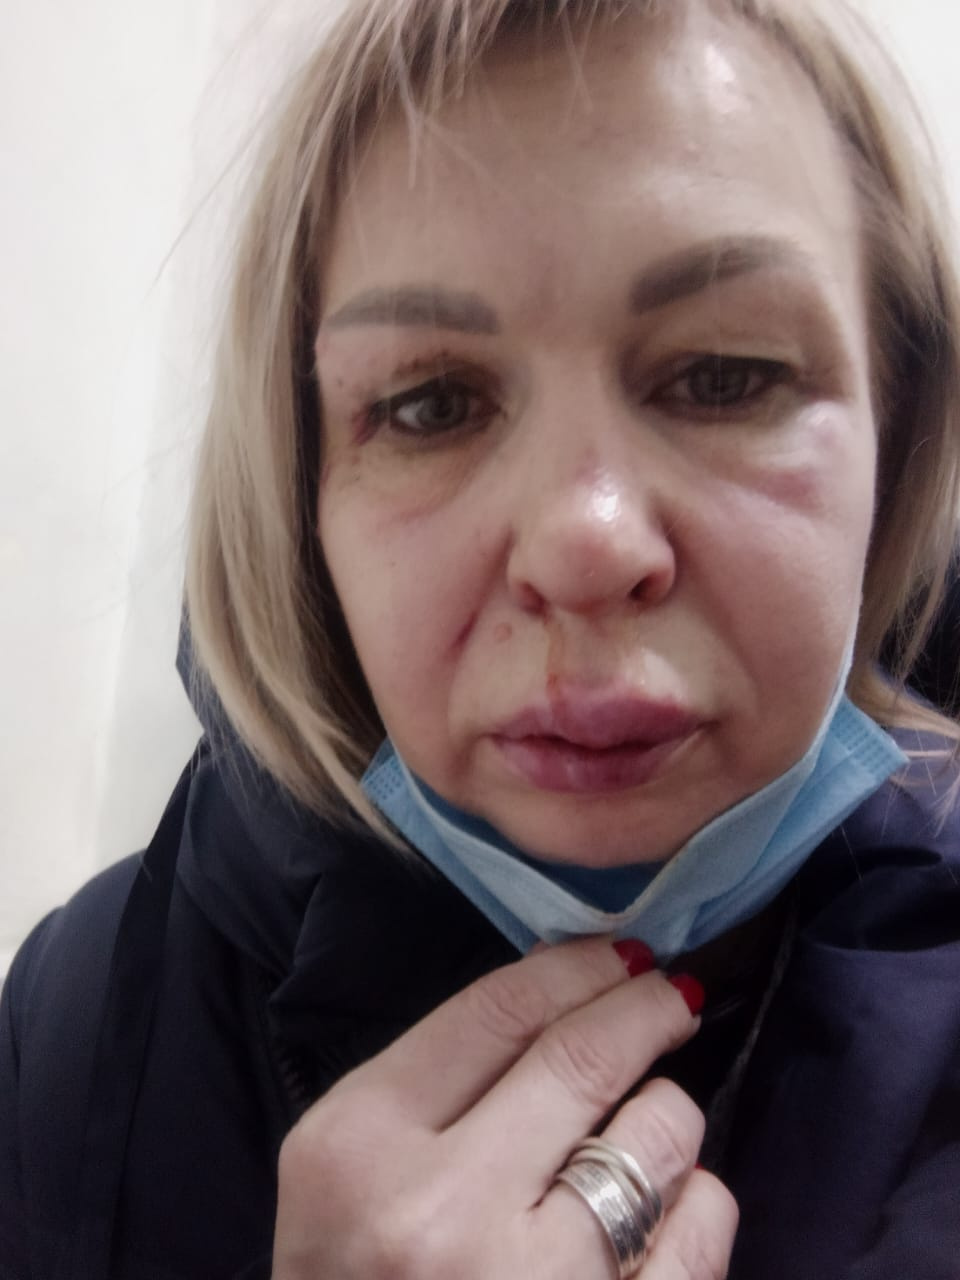 Это фото Наталья Артамонова сделала после драки с соседкой. Медики установили, что многодетная мать сломала Наталье нос